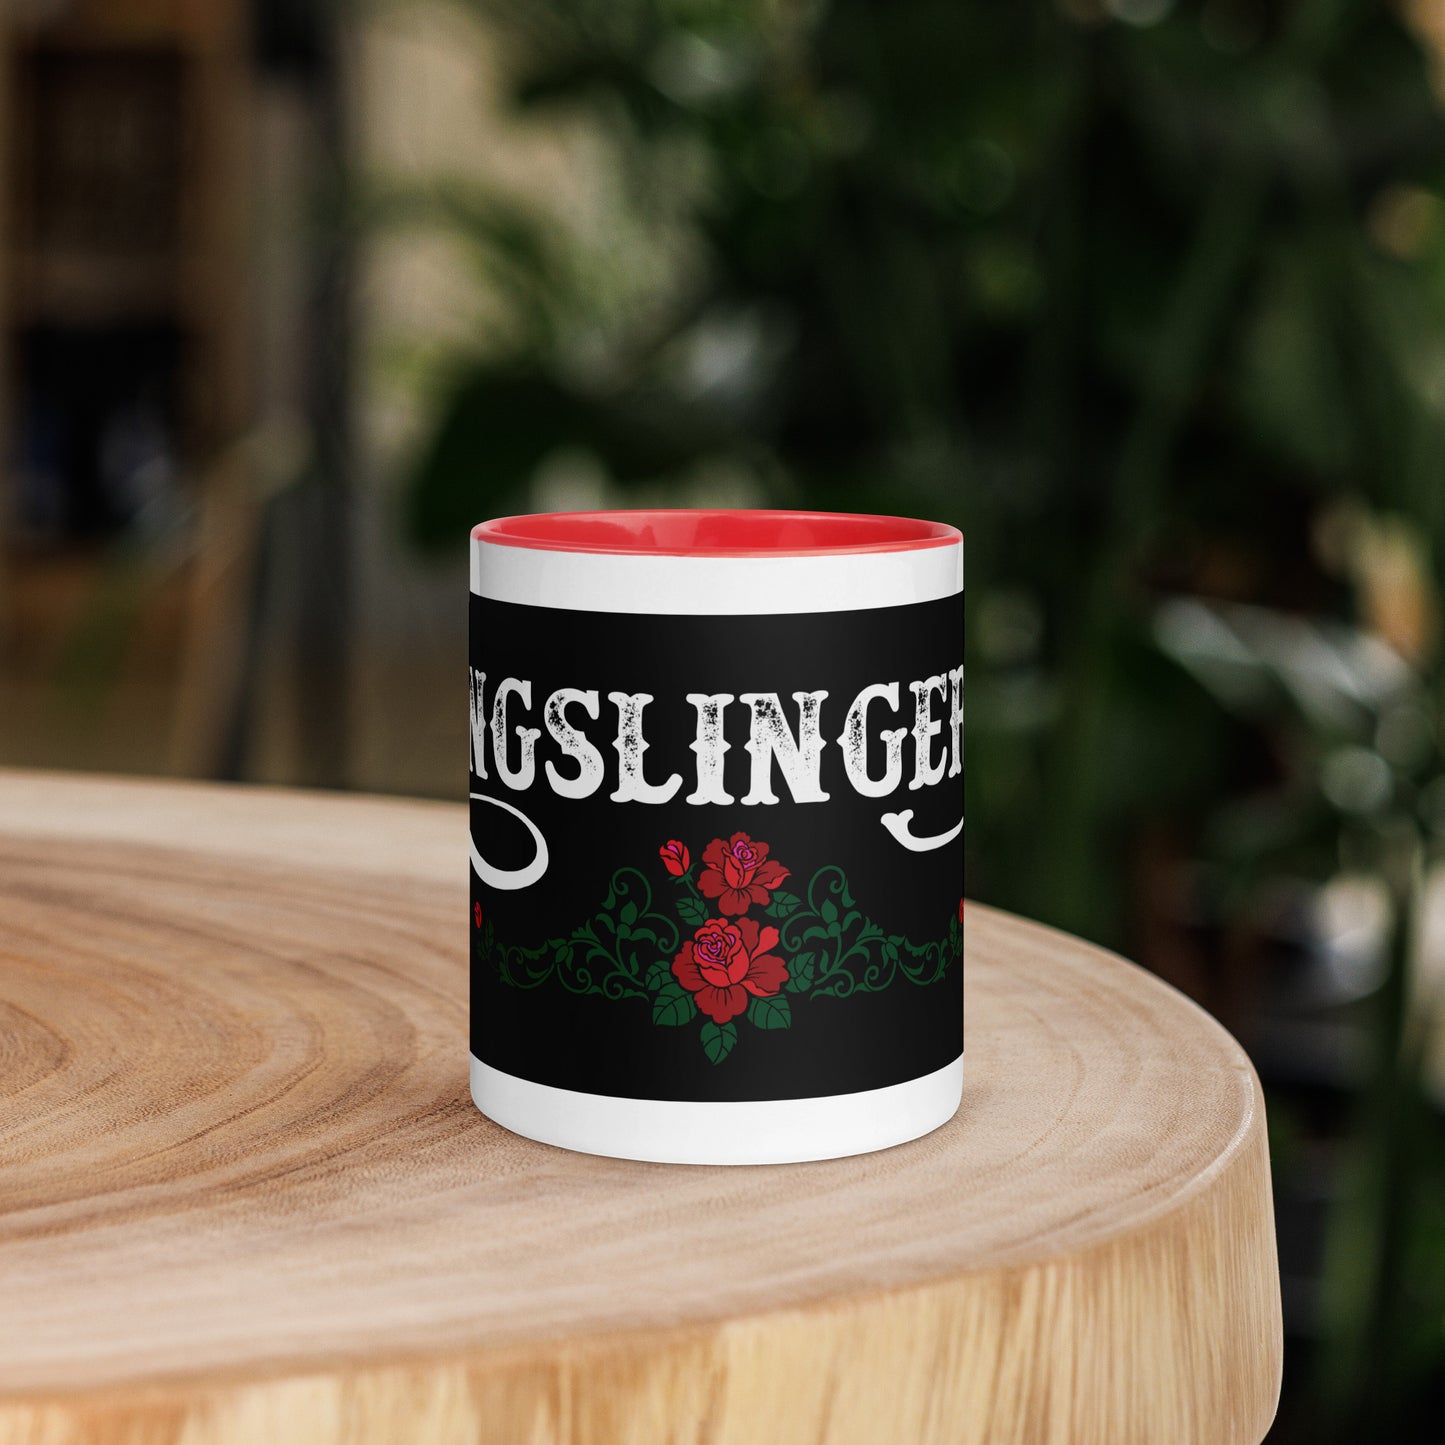 Kingslingers Mug, Black